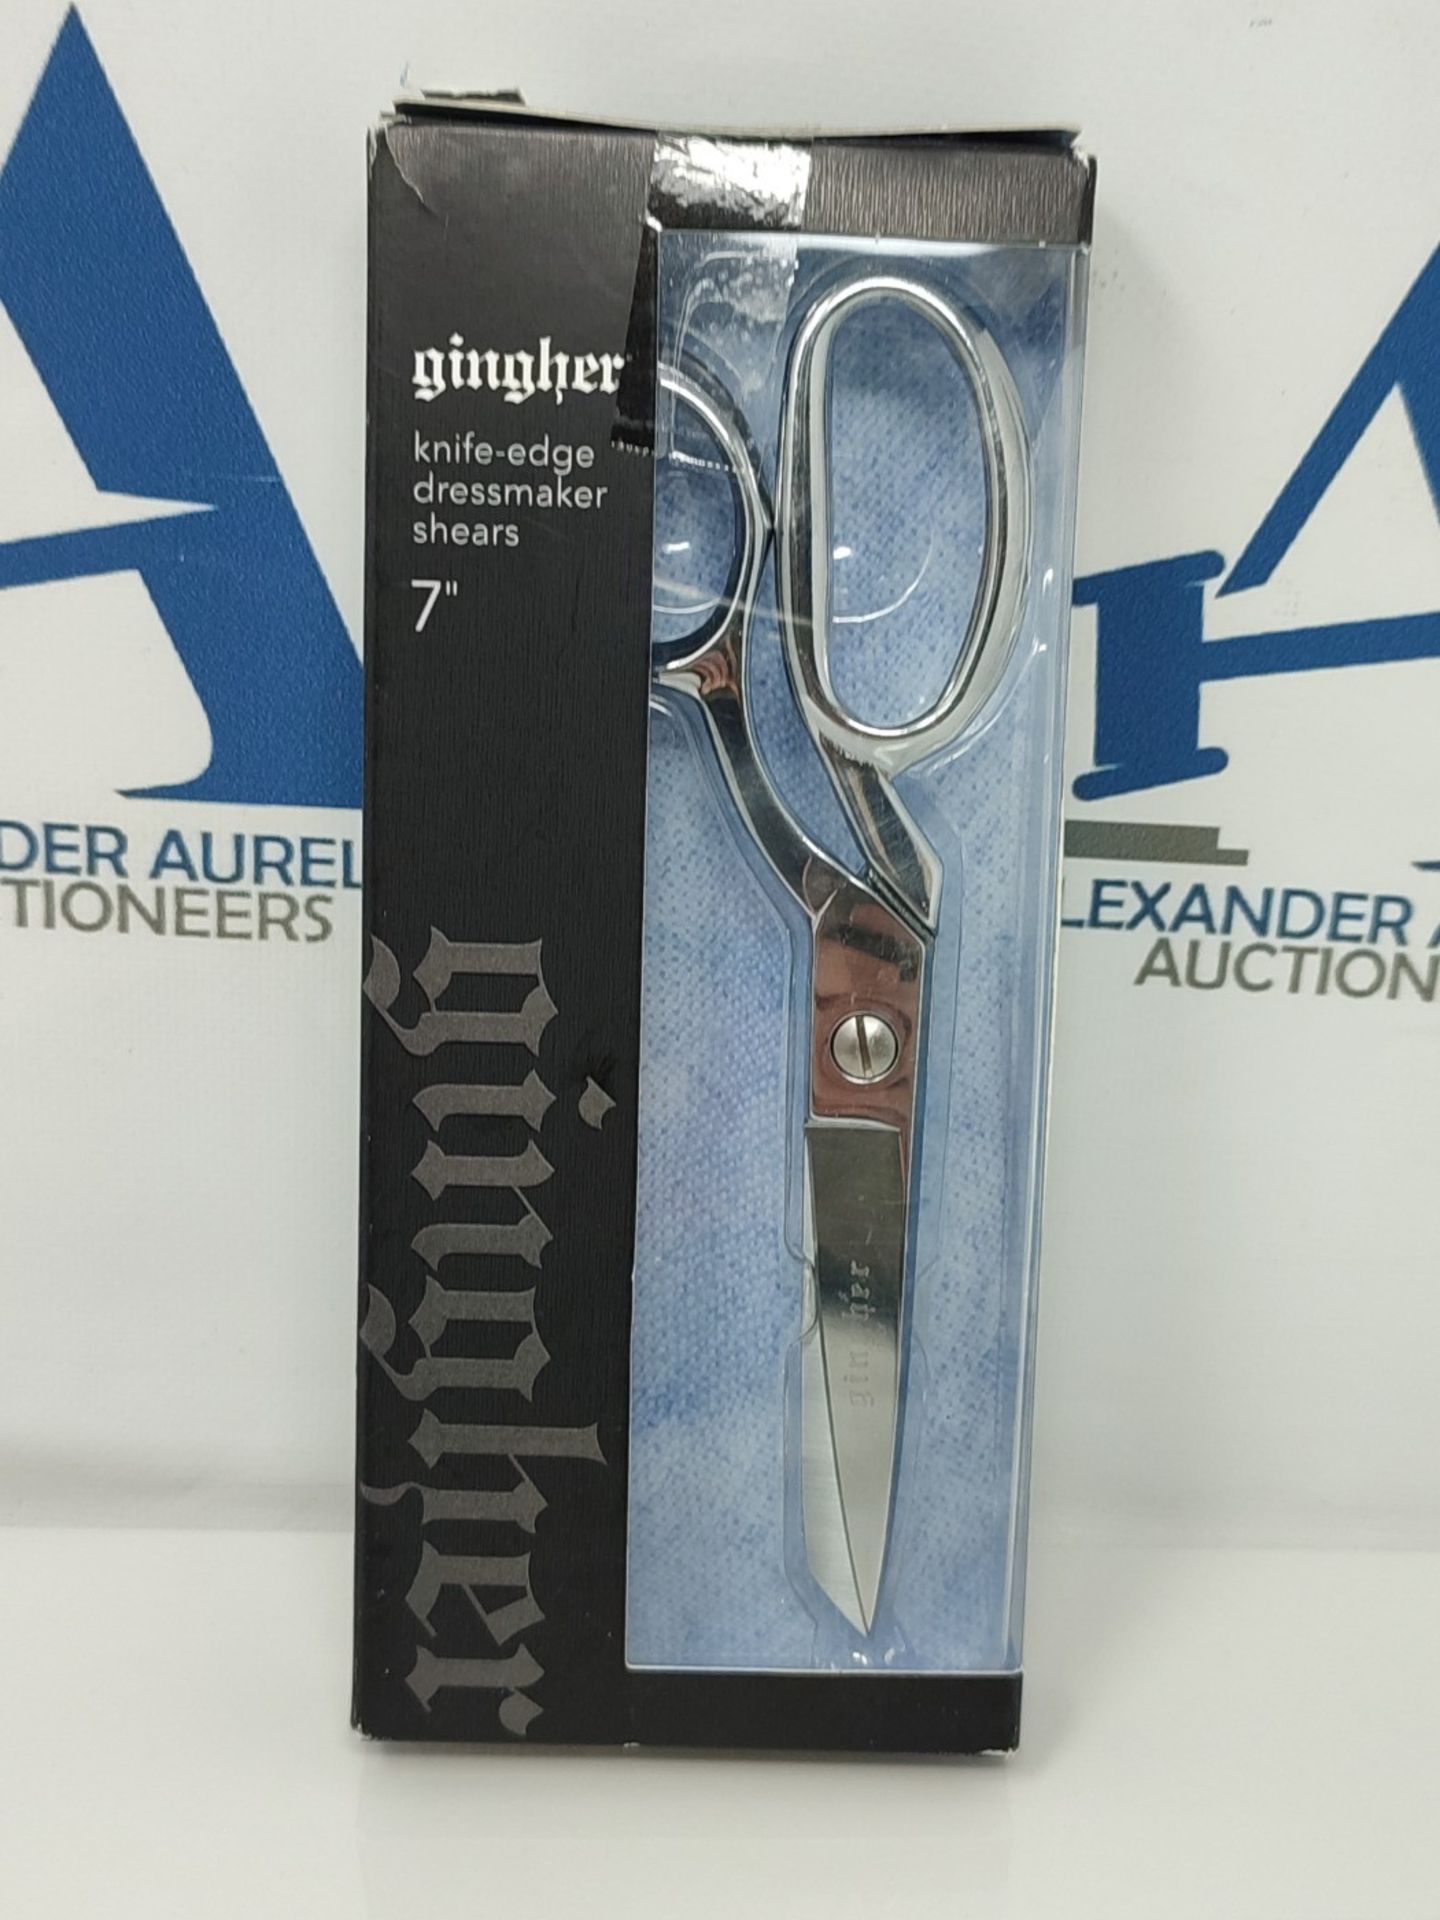 Gingher Scissors Knife-Edge Dressmaker Shears 7", Silver - Image 2 of 3